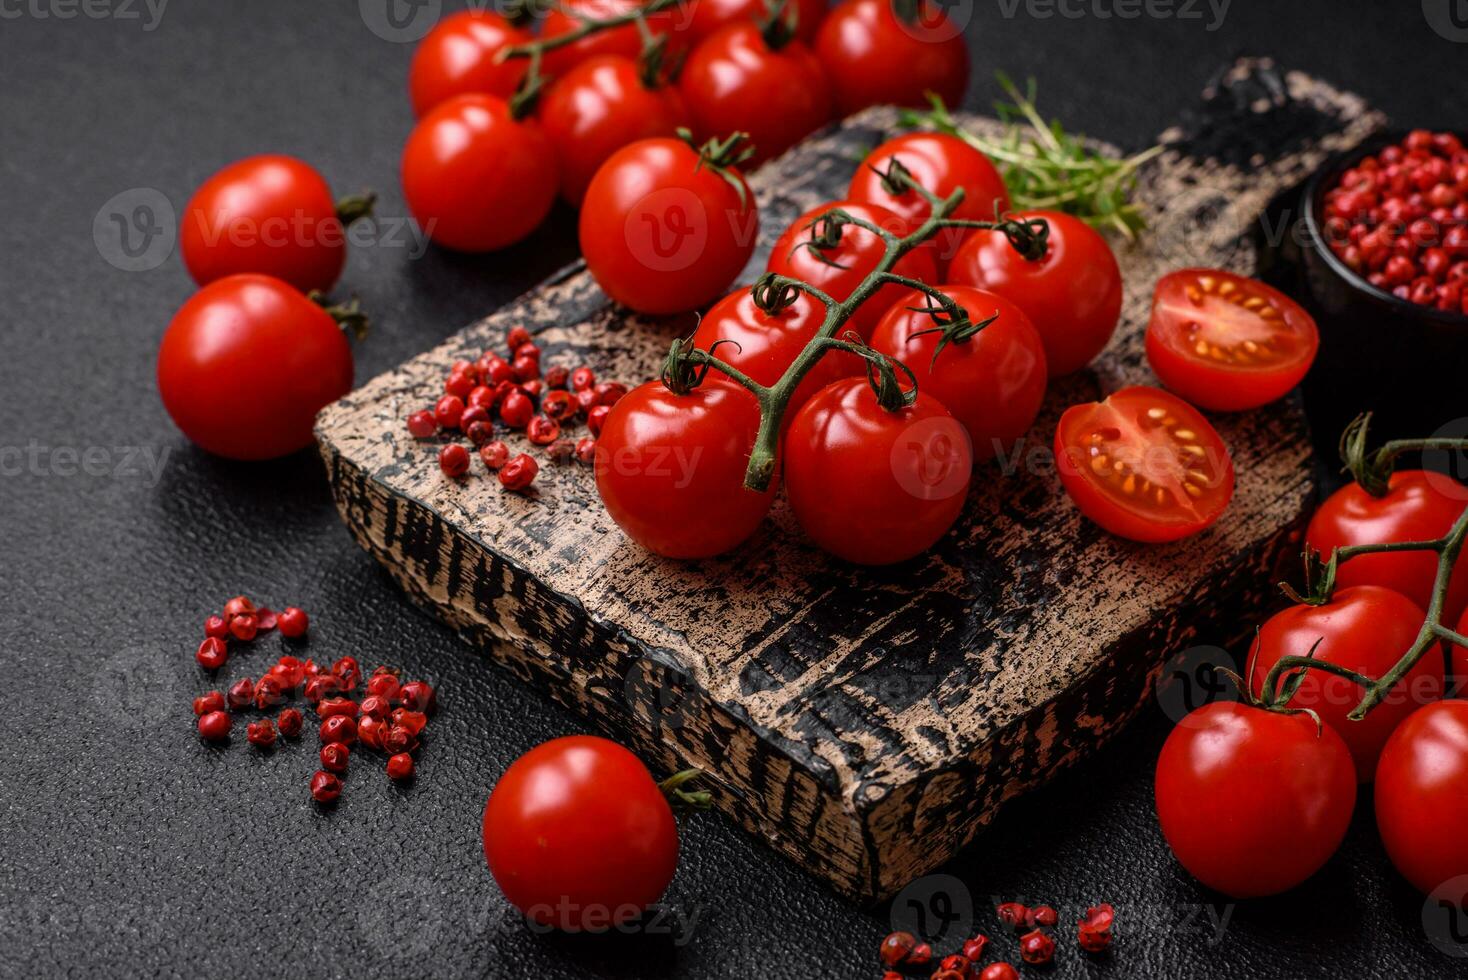 delicioso Fresco Cereza Tomates en el ramas como un ingrediente para Cocinando un vegetariano plato foto